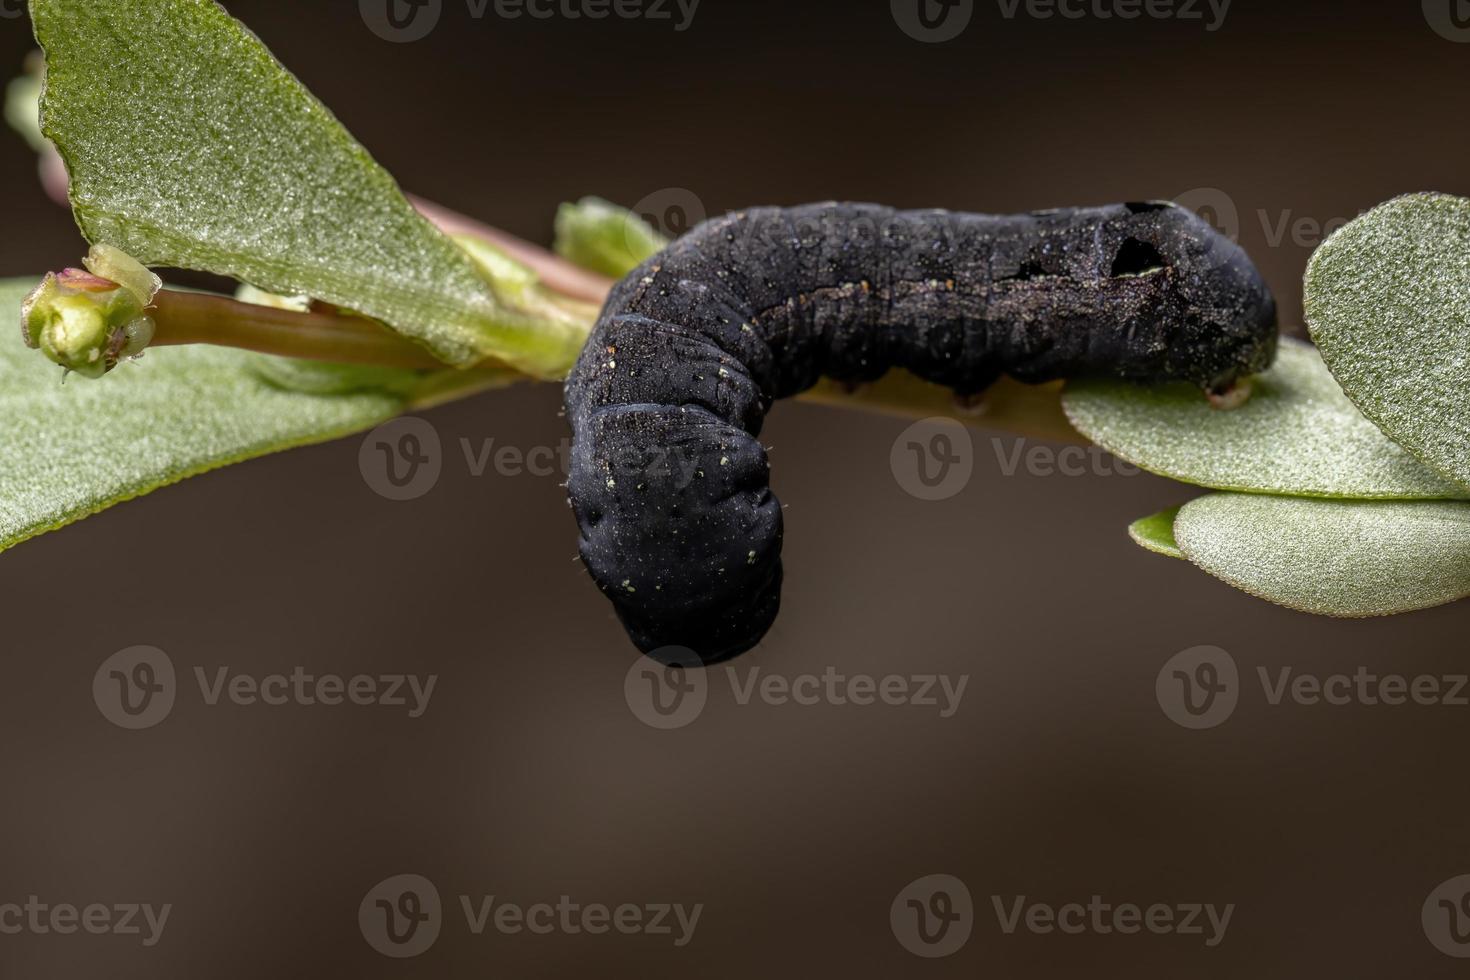 lagarta comendo uma planta de beldroega comum foto